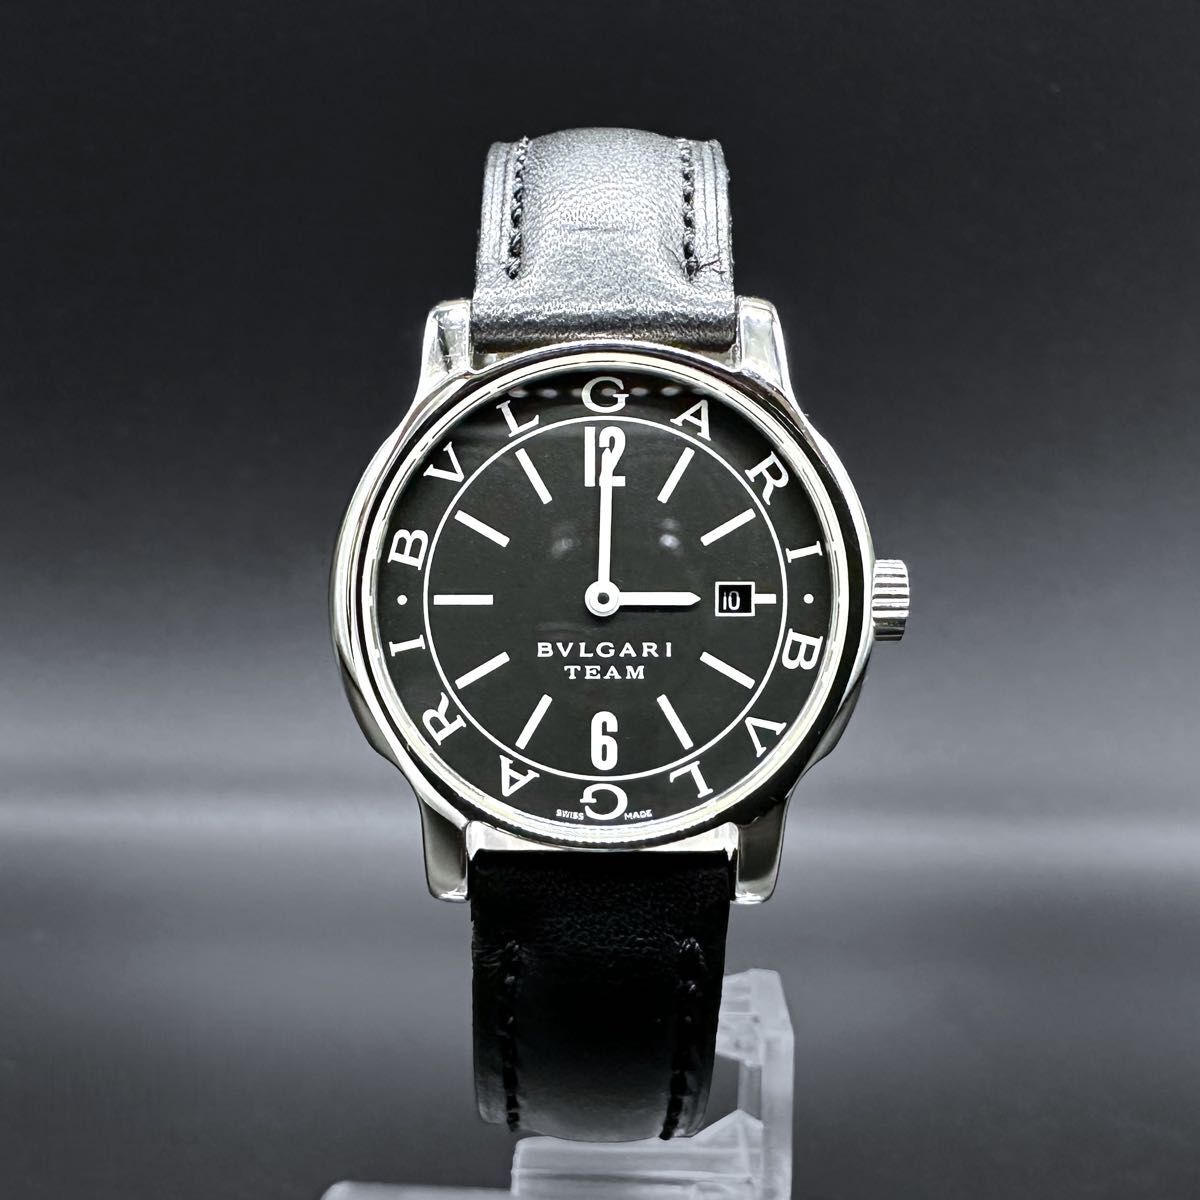 [ очень красивый товар ]BVLGARI Solotempo штат служащих ограничение ST29S наручные часы 